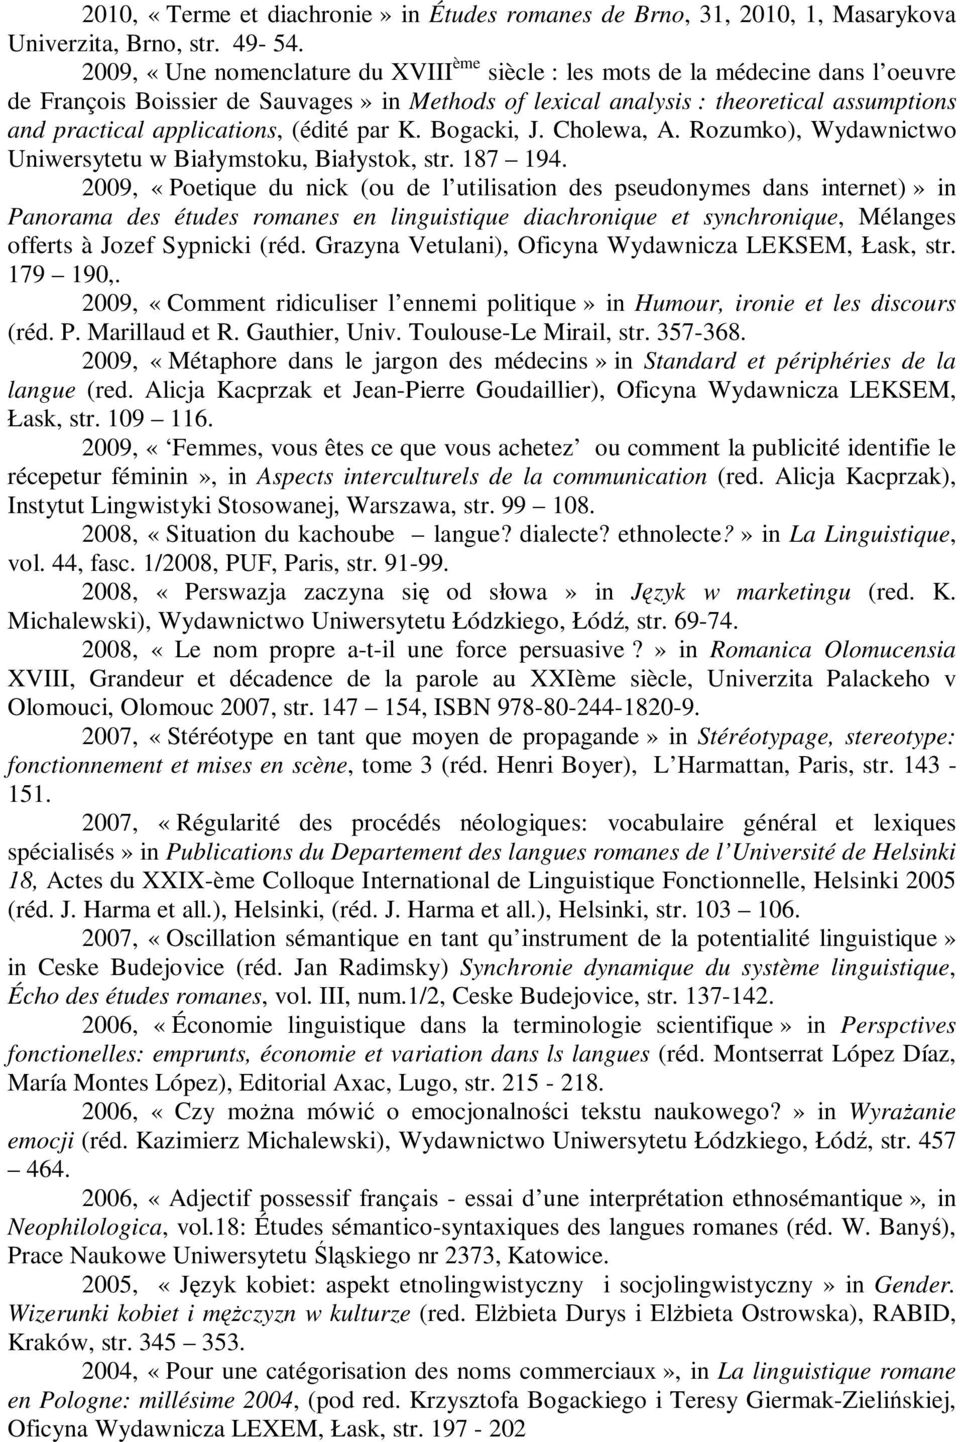 applications, (édité par K. Bogacki, J. Cholewa, A. Rozumko), Wydawnictwo Uniwersytetu w Białymstoku, Białystok, str. 187 194.